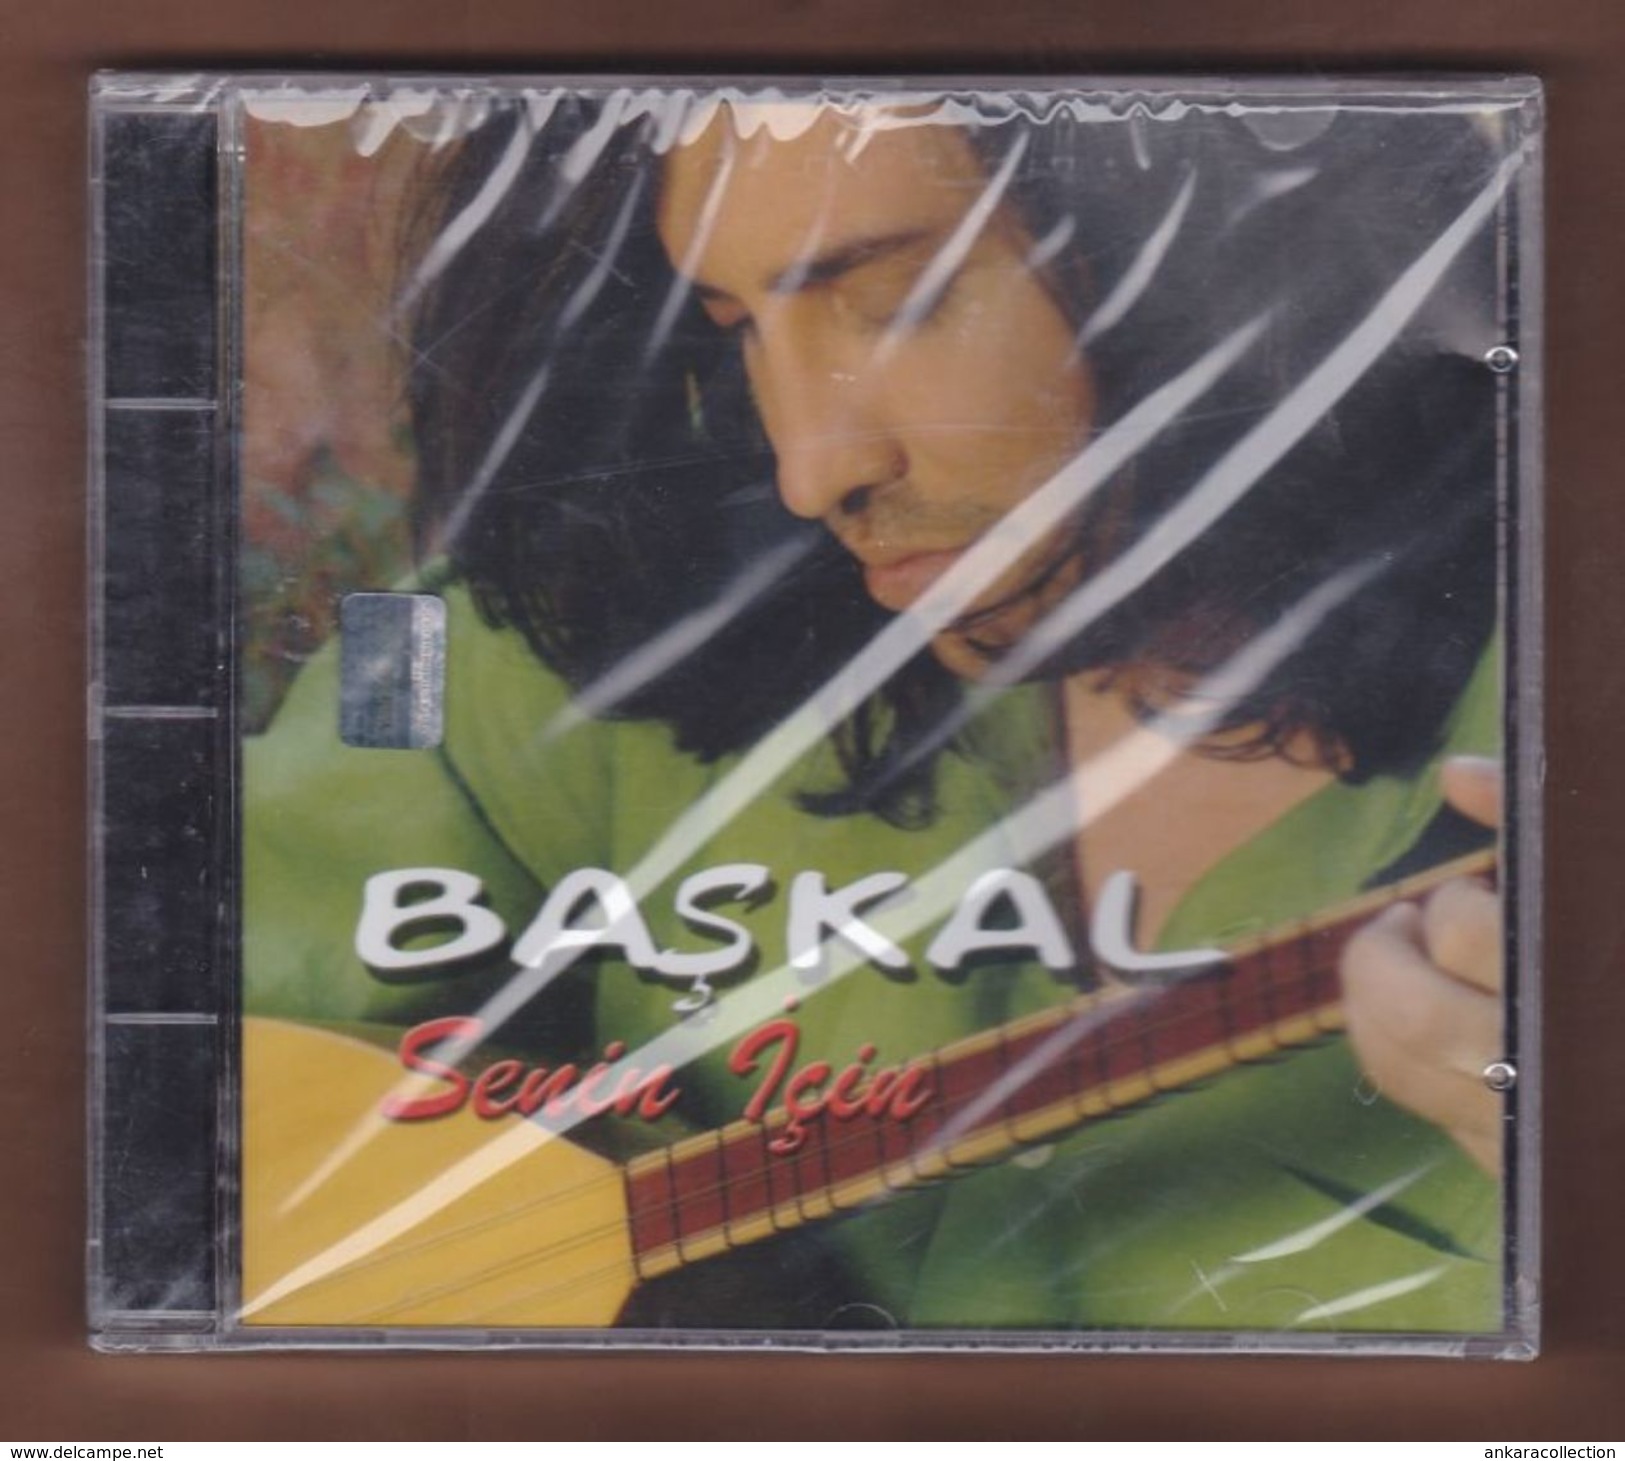 AC - BASKAL SENIN ICIN BRAND NEW TURKISH MUSIC CD - World Music